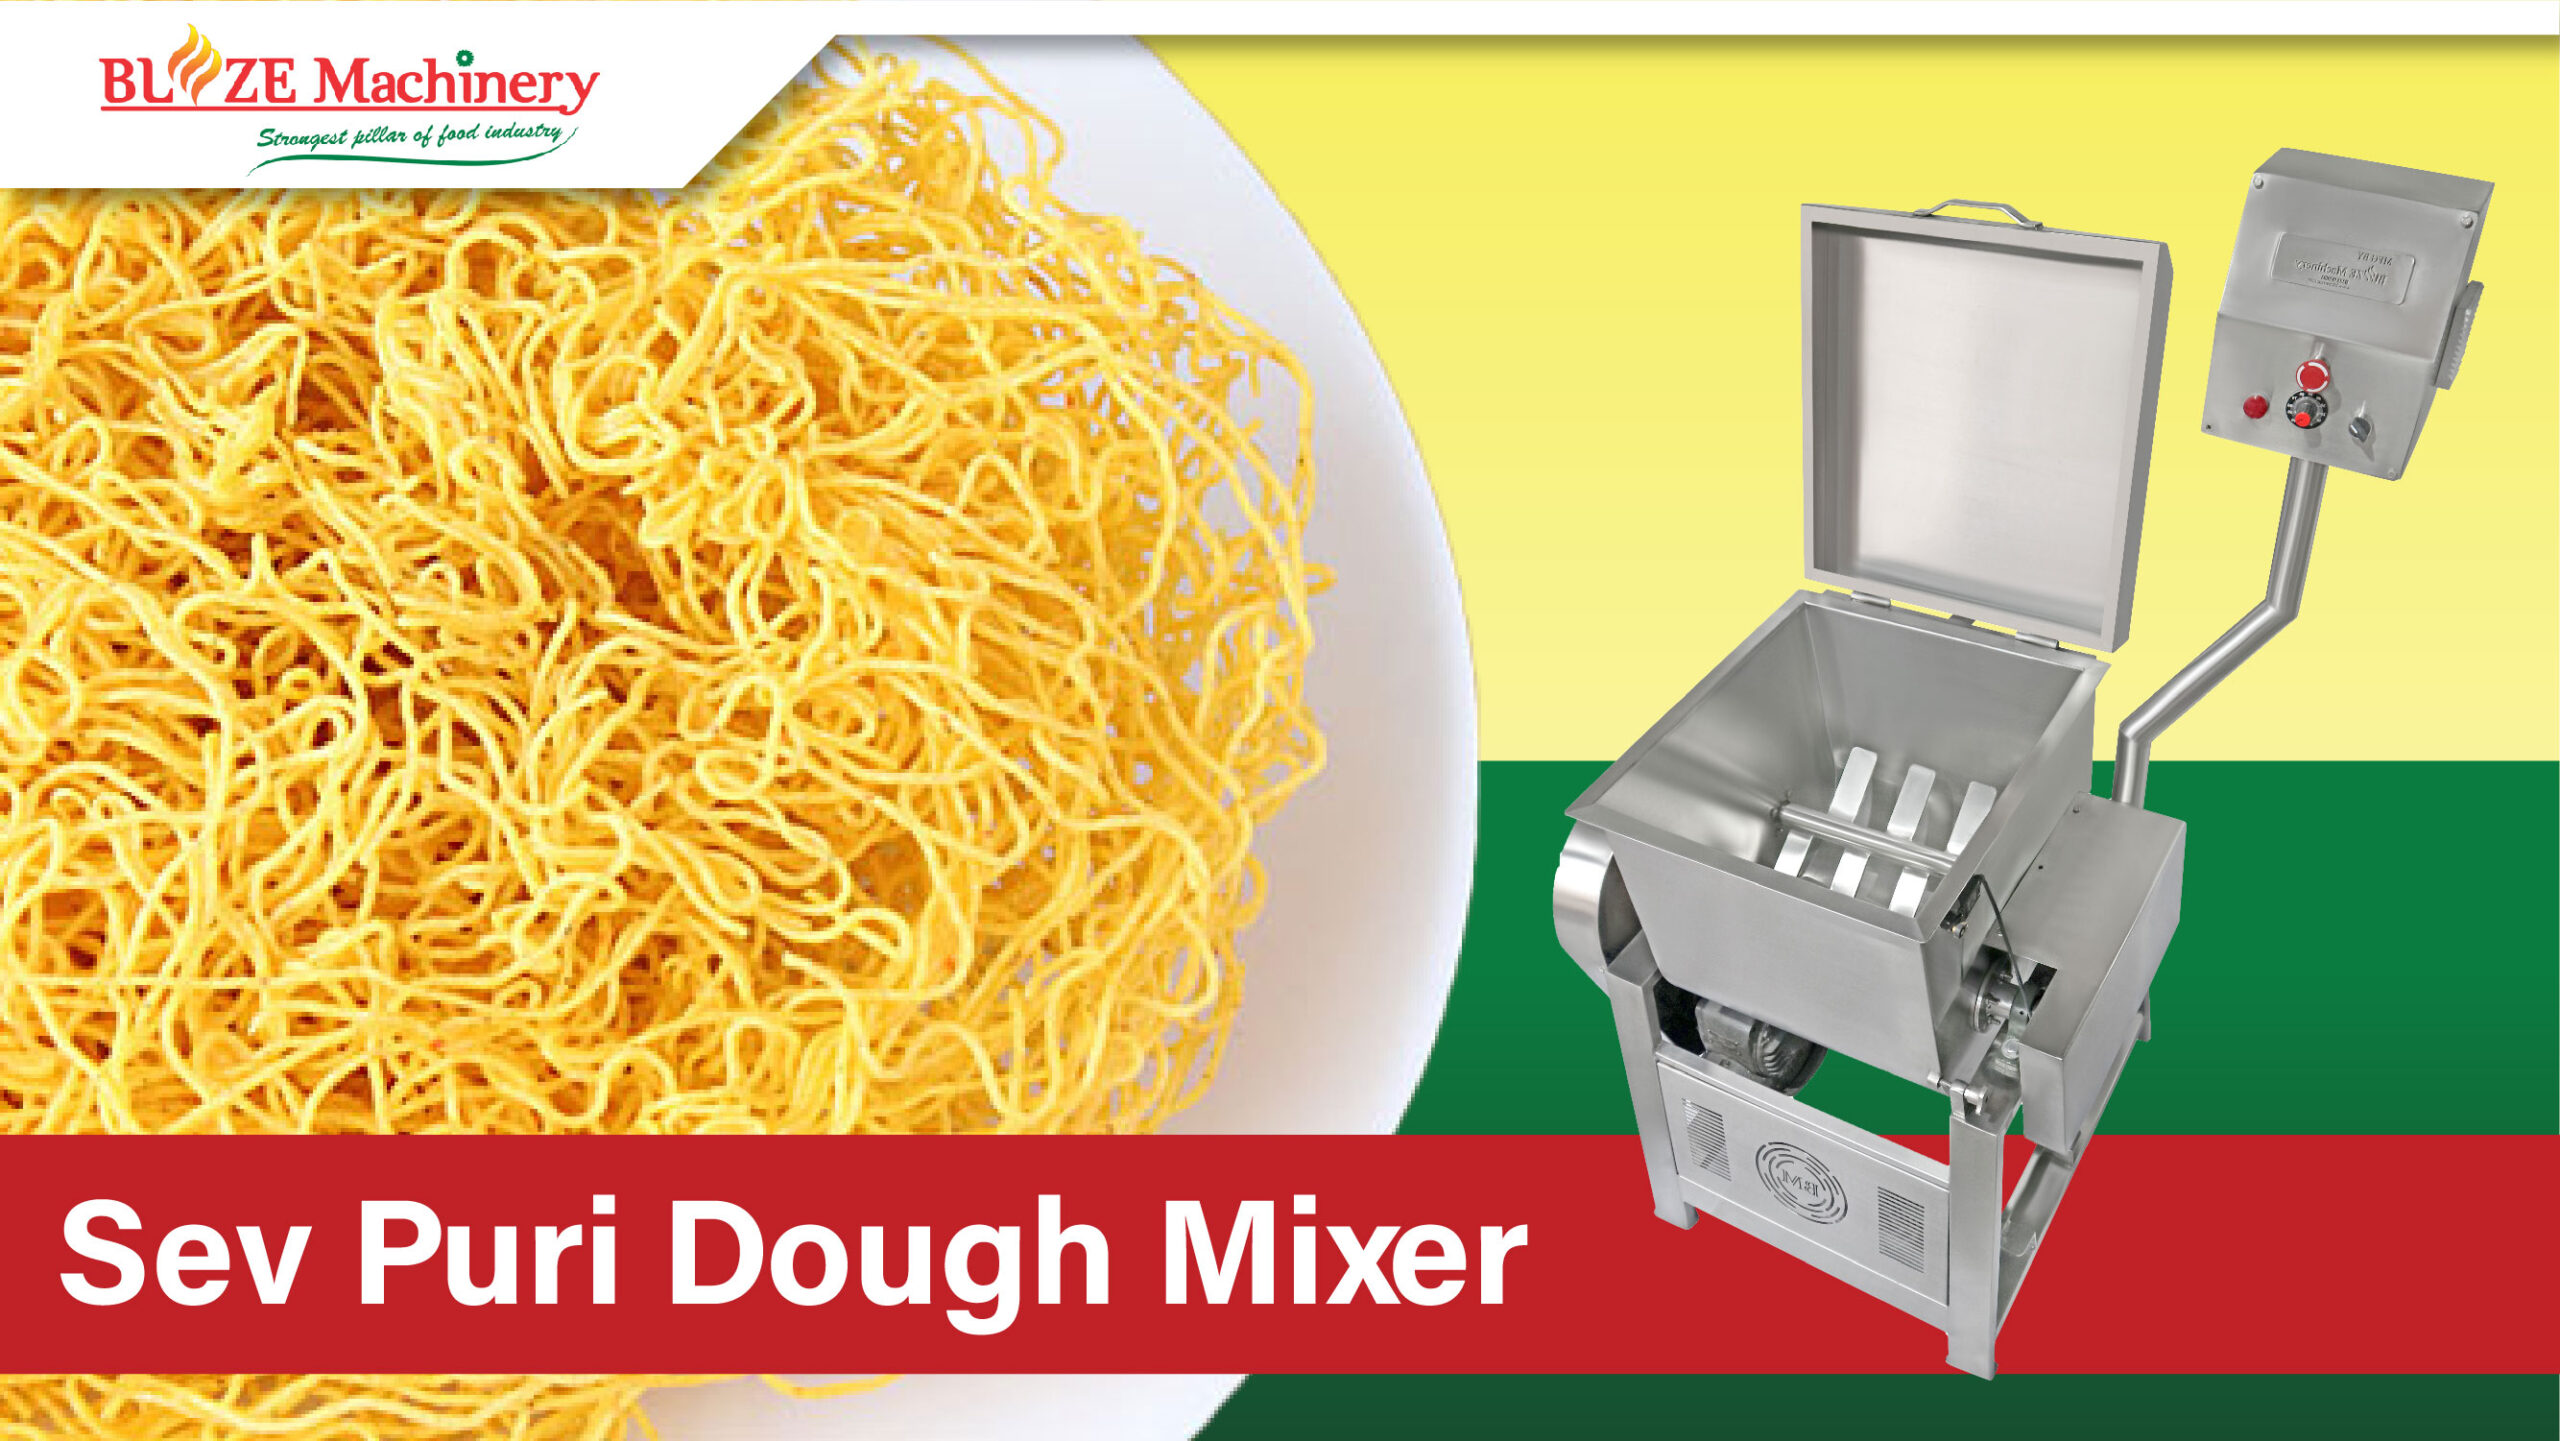 Sev Puri Dough Mixer